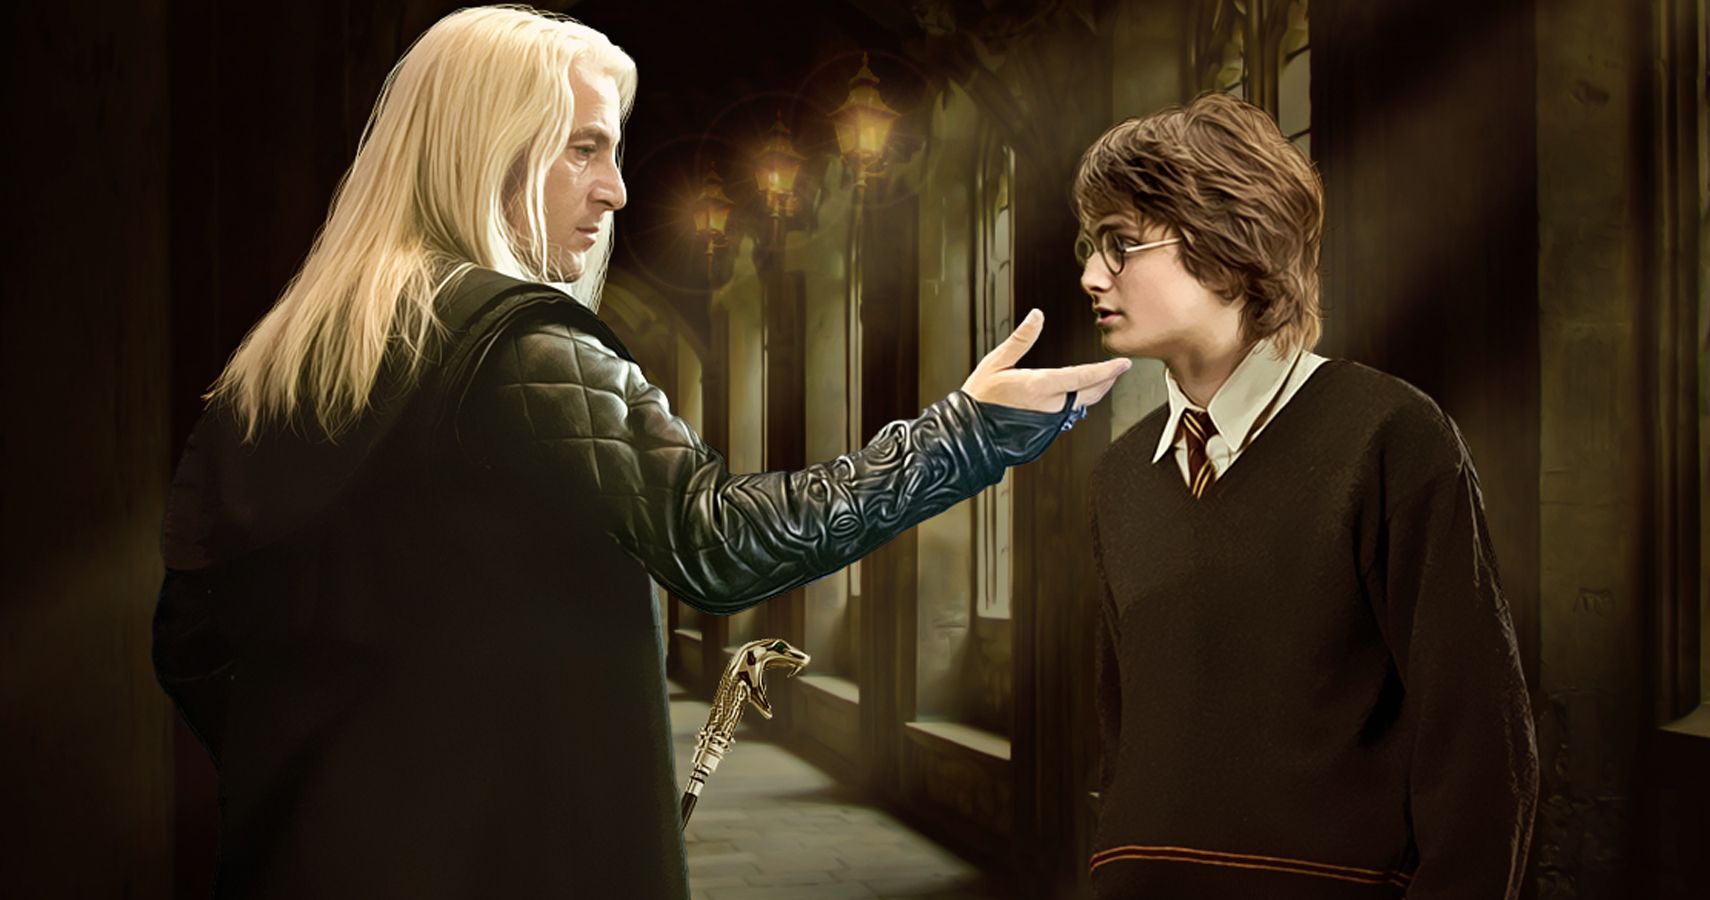 Draco Malfoy, Harry Potter Fanfictional Wikia